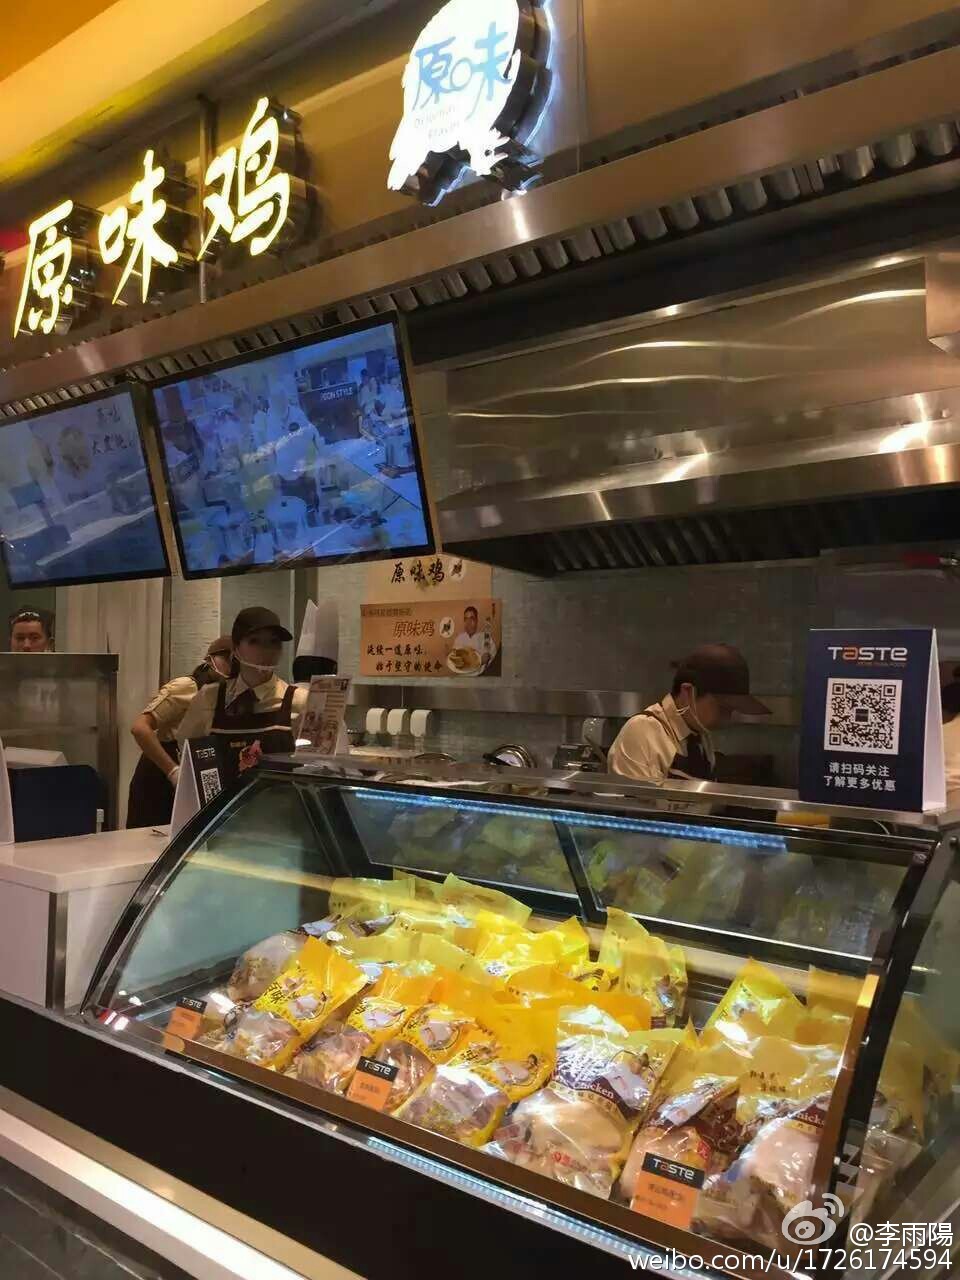 当时李雨阳卖鸡卖到去内地超市。